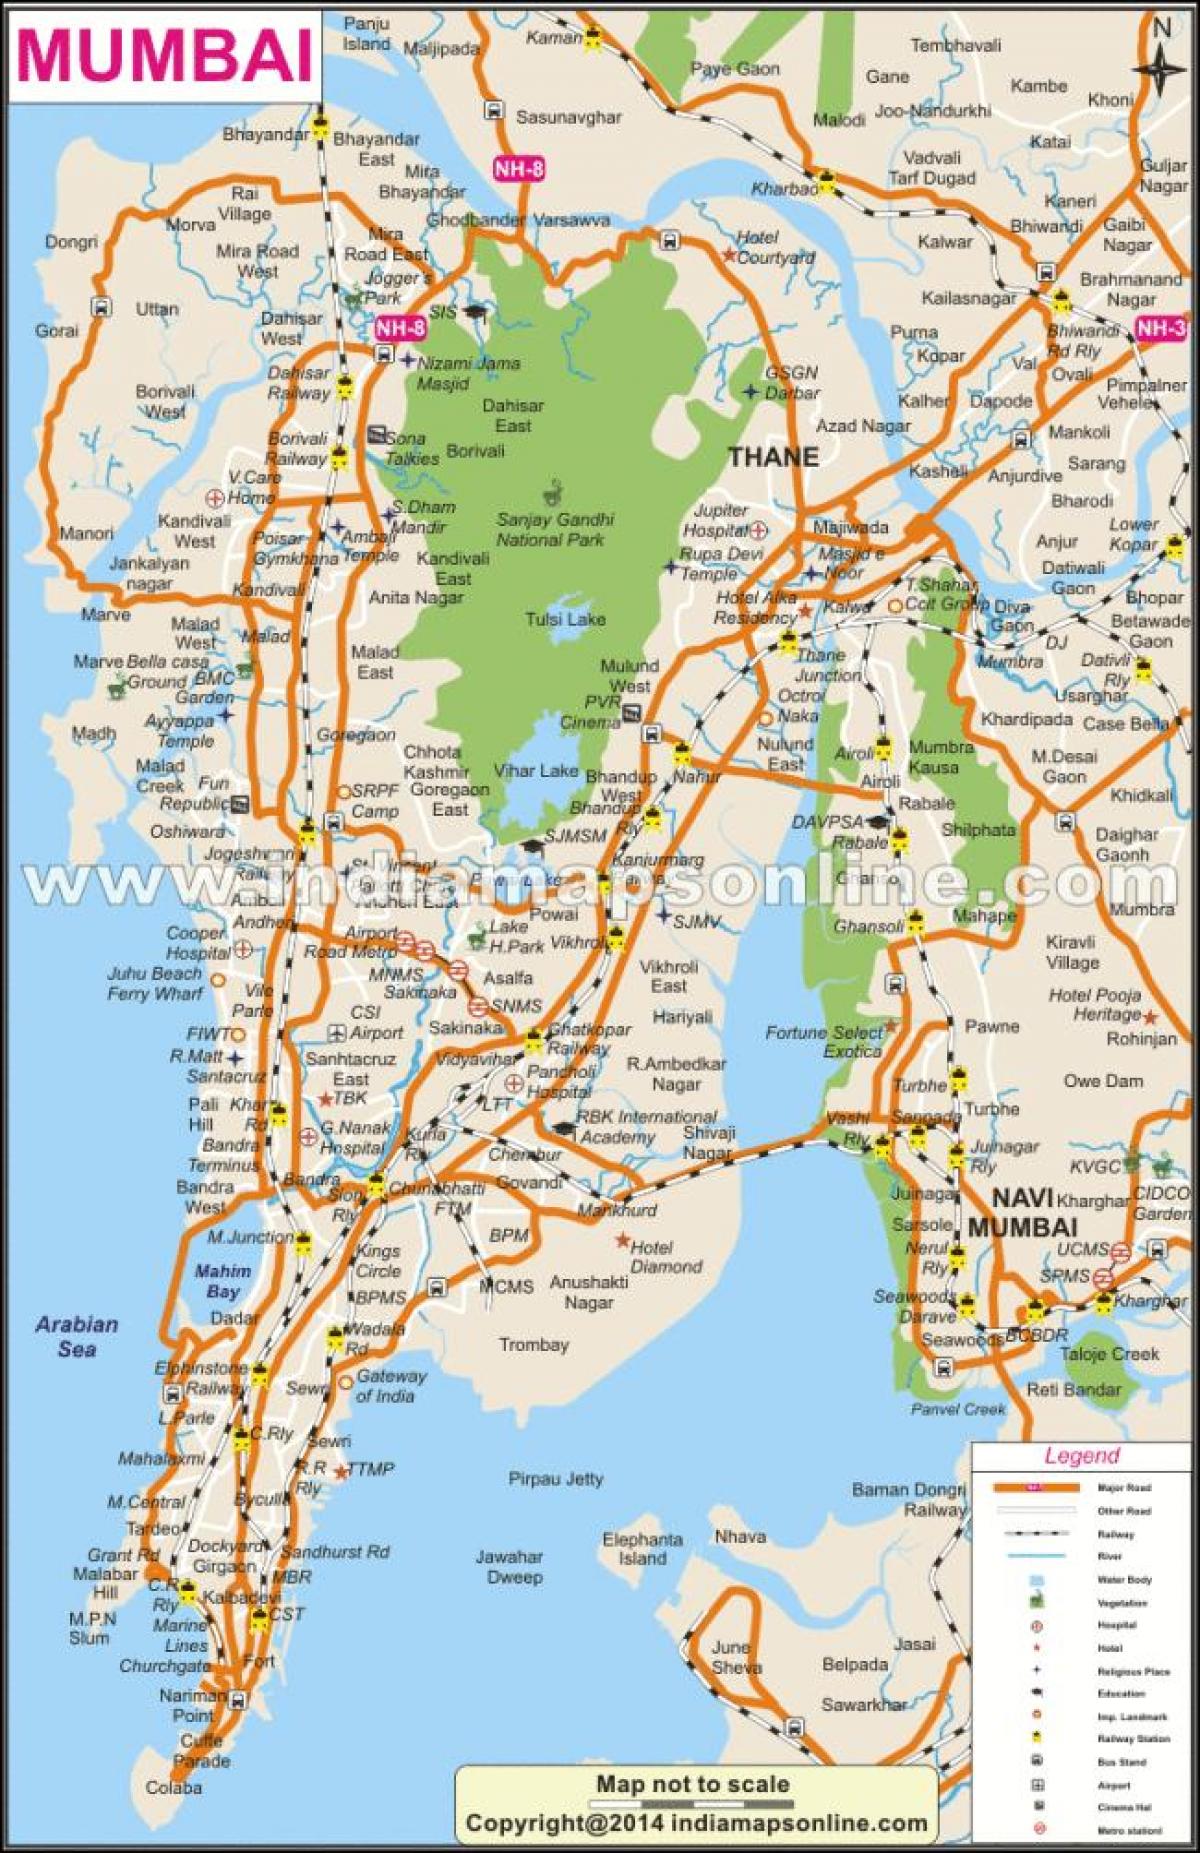 નકશો મુંબઇ સ્થાનિક